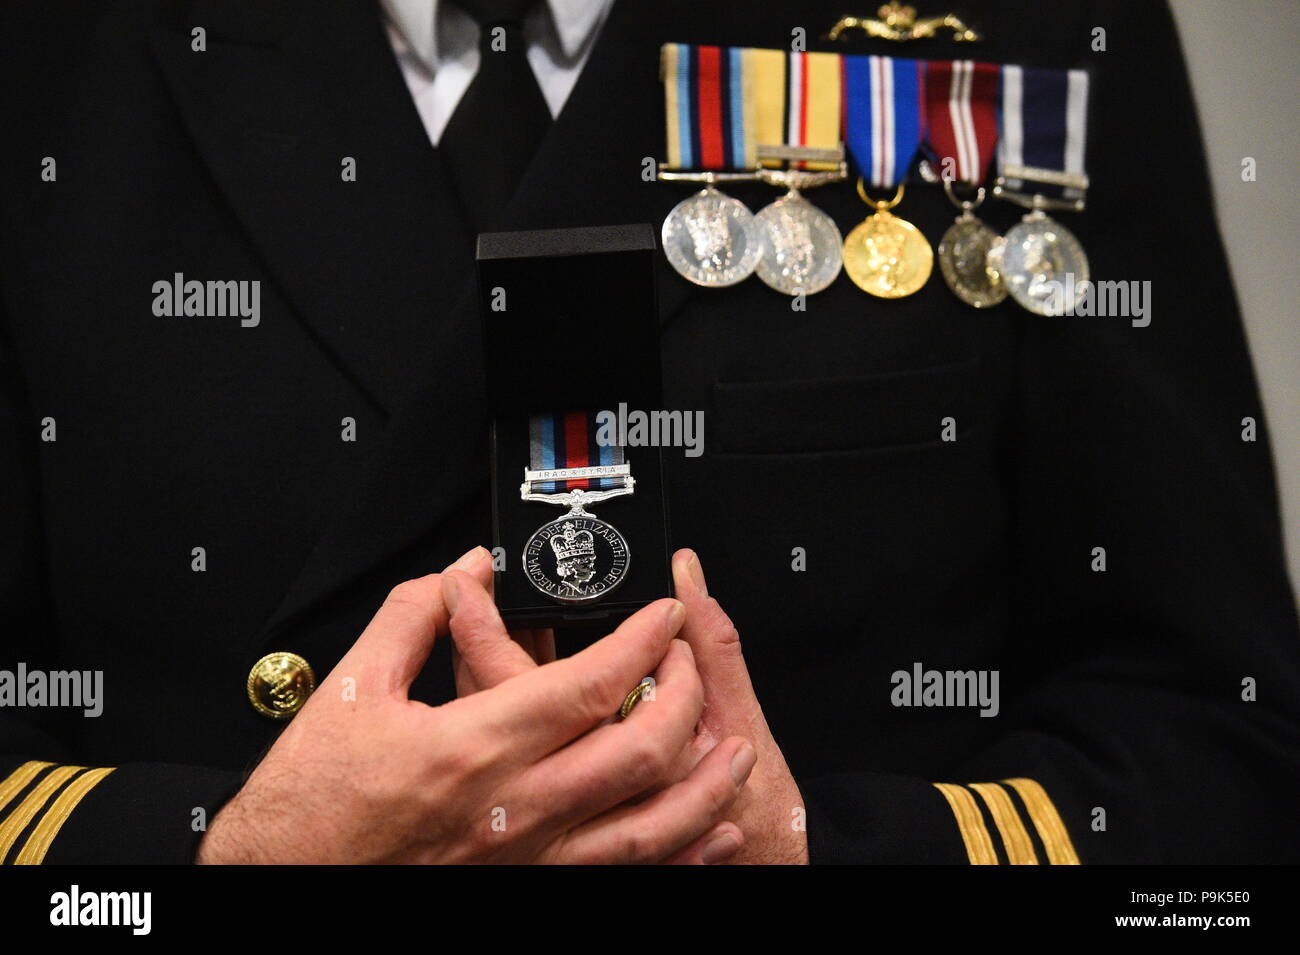 Ein Veteran hält seinen neuen Betrieb Shader Medaille, die ihm die Beteiligung an der Koalition Kampf gegen Daesh im Irak und in Syrien vorgelegt wurde, auf das Verteidigungsministerium in London. Stockfoto